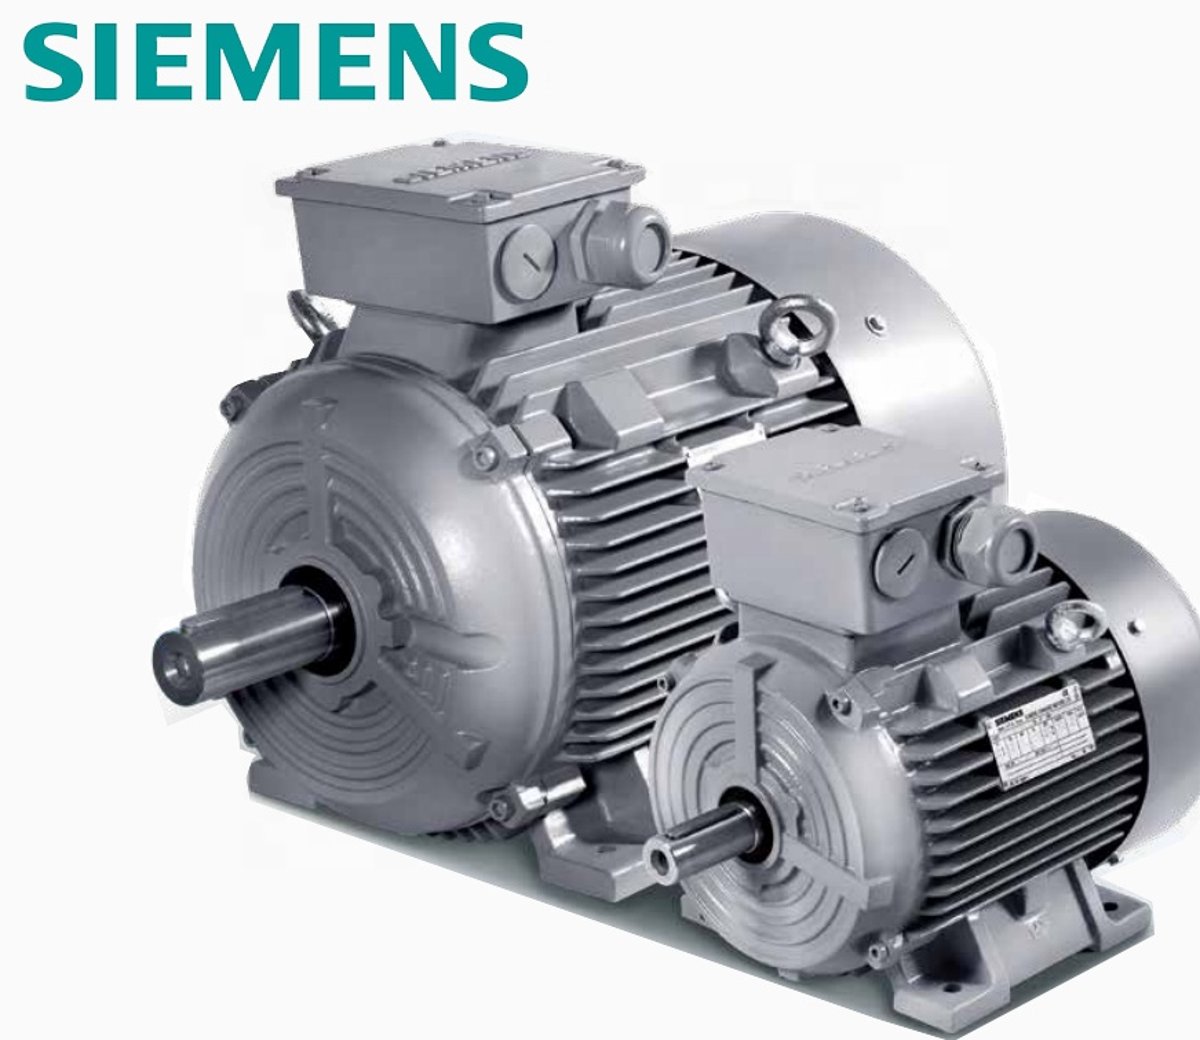 Bienvenidos Siemens Motores